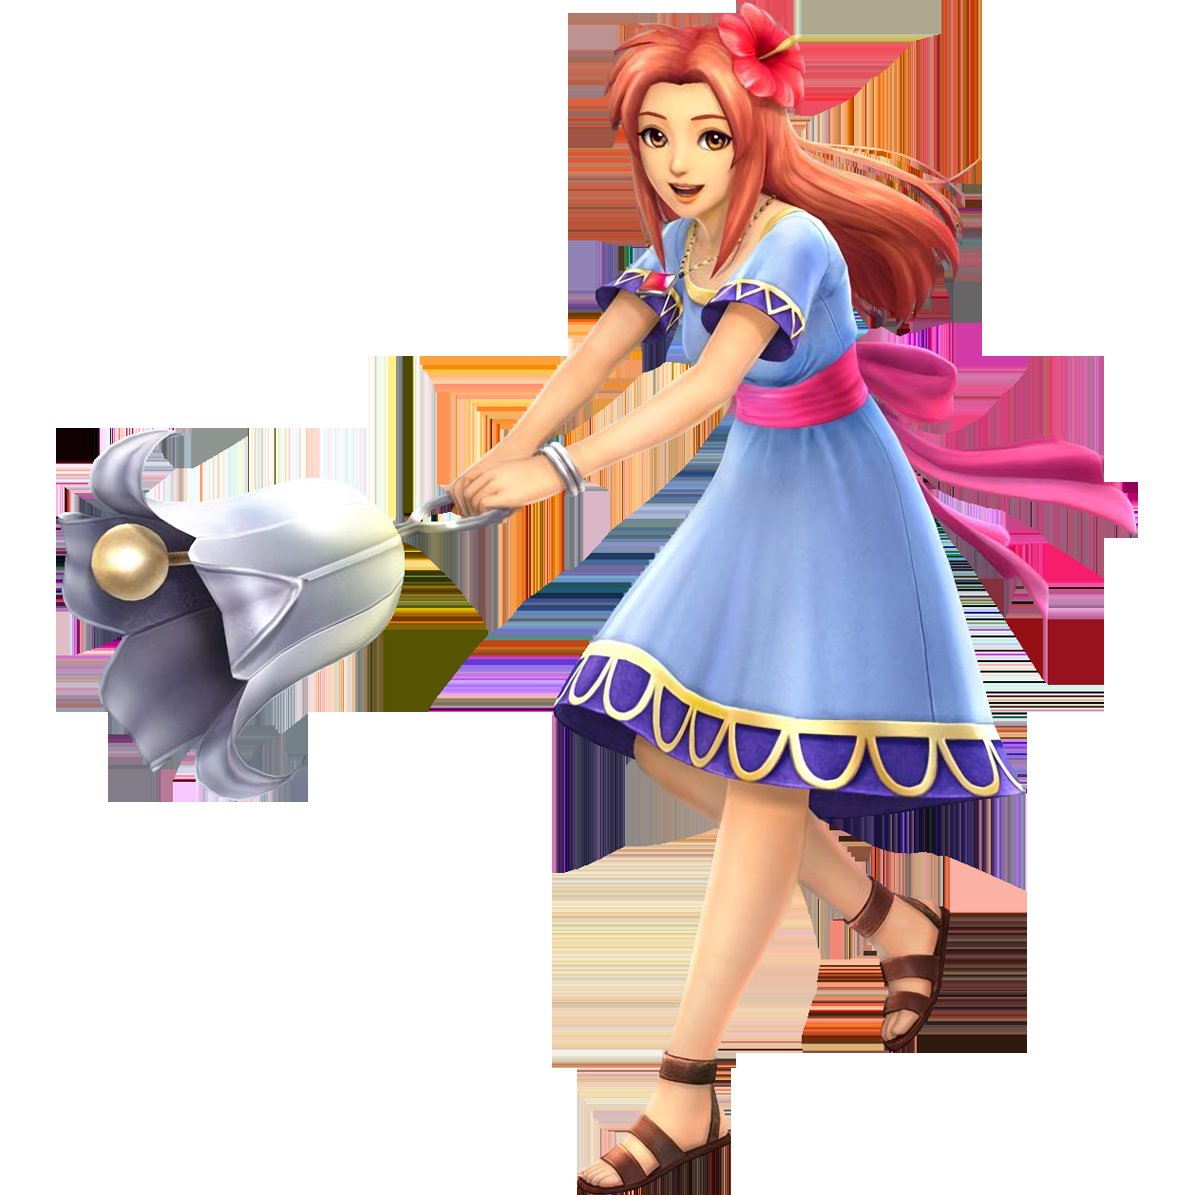 Marin - Zelda Wiki